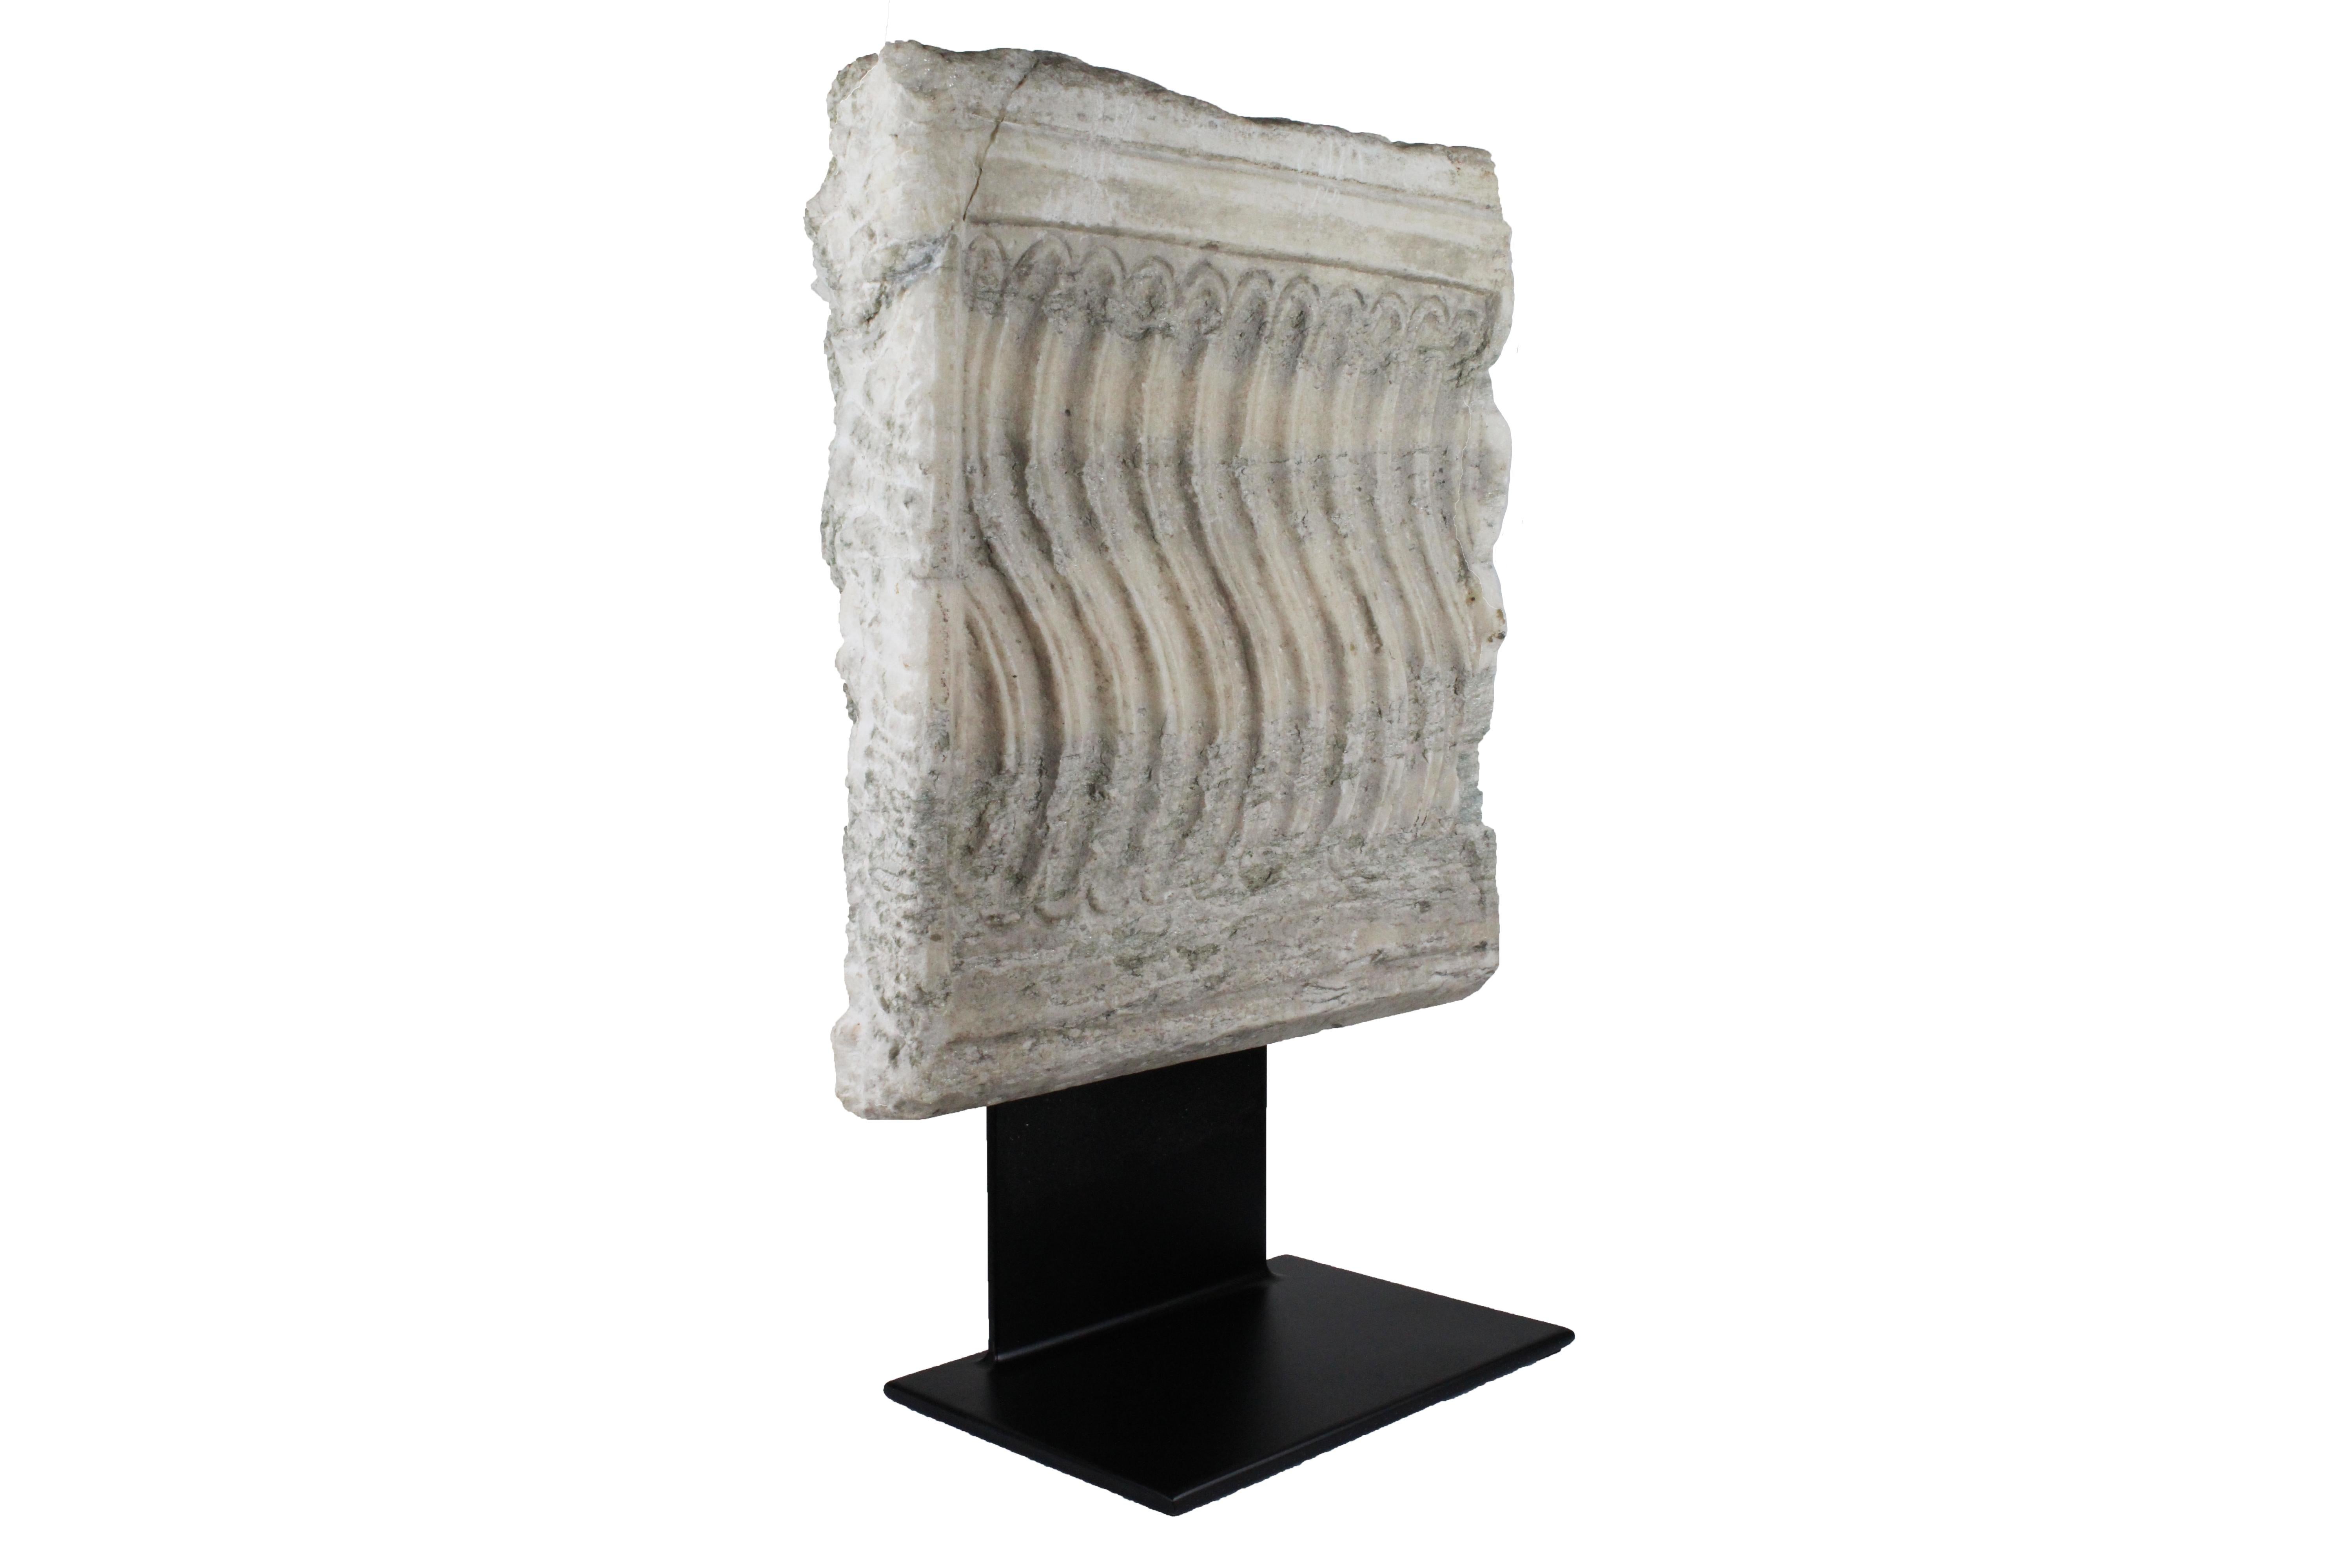 Sculpture antique romaine en marbre, 2e siècle ADS, Sud de la France.
Cette sculpture est une antiquité romaine.
Coupe frontale d'un sarcophage romain.
Réalisé en marbre blanc et en fer.
Très bon état ancien.